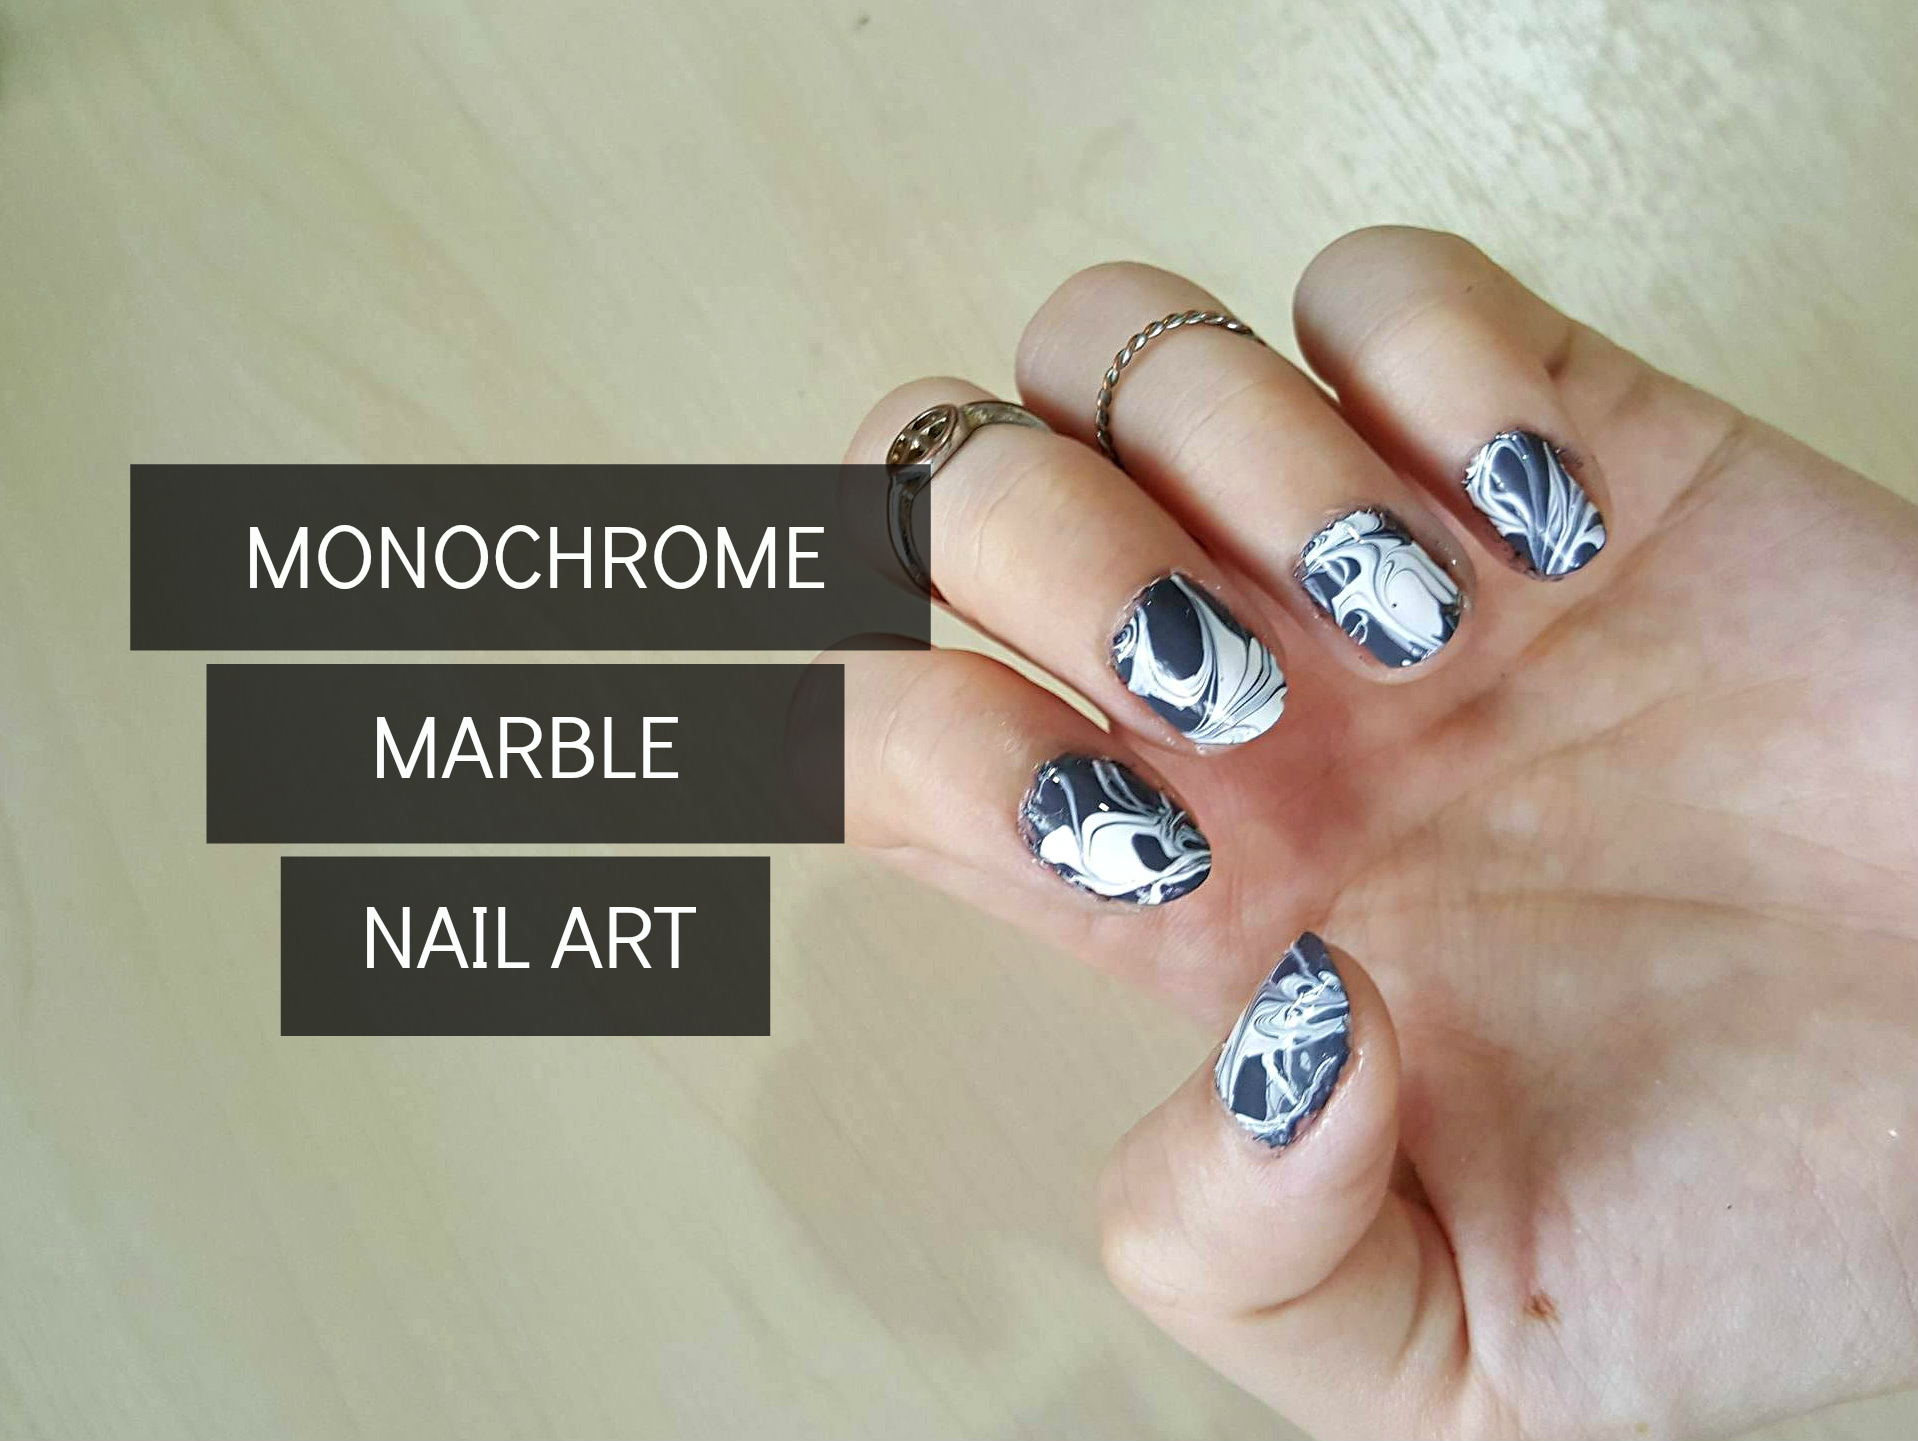 marble nail art image